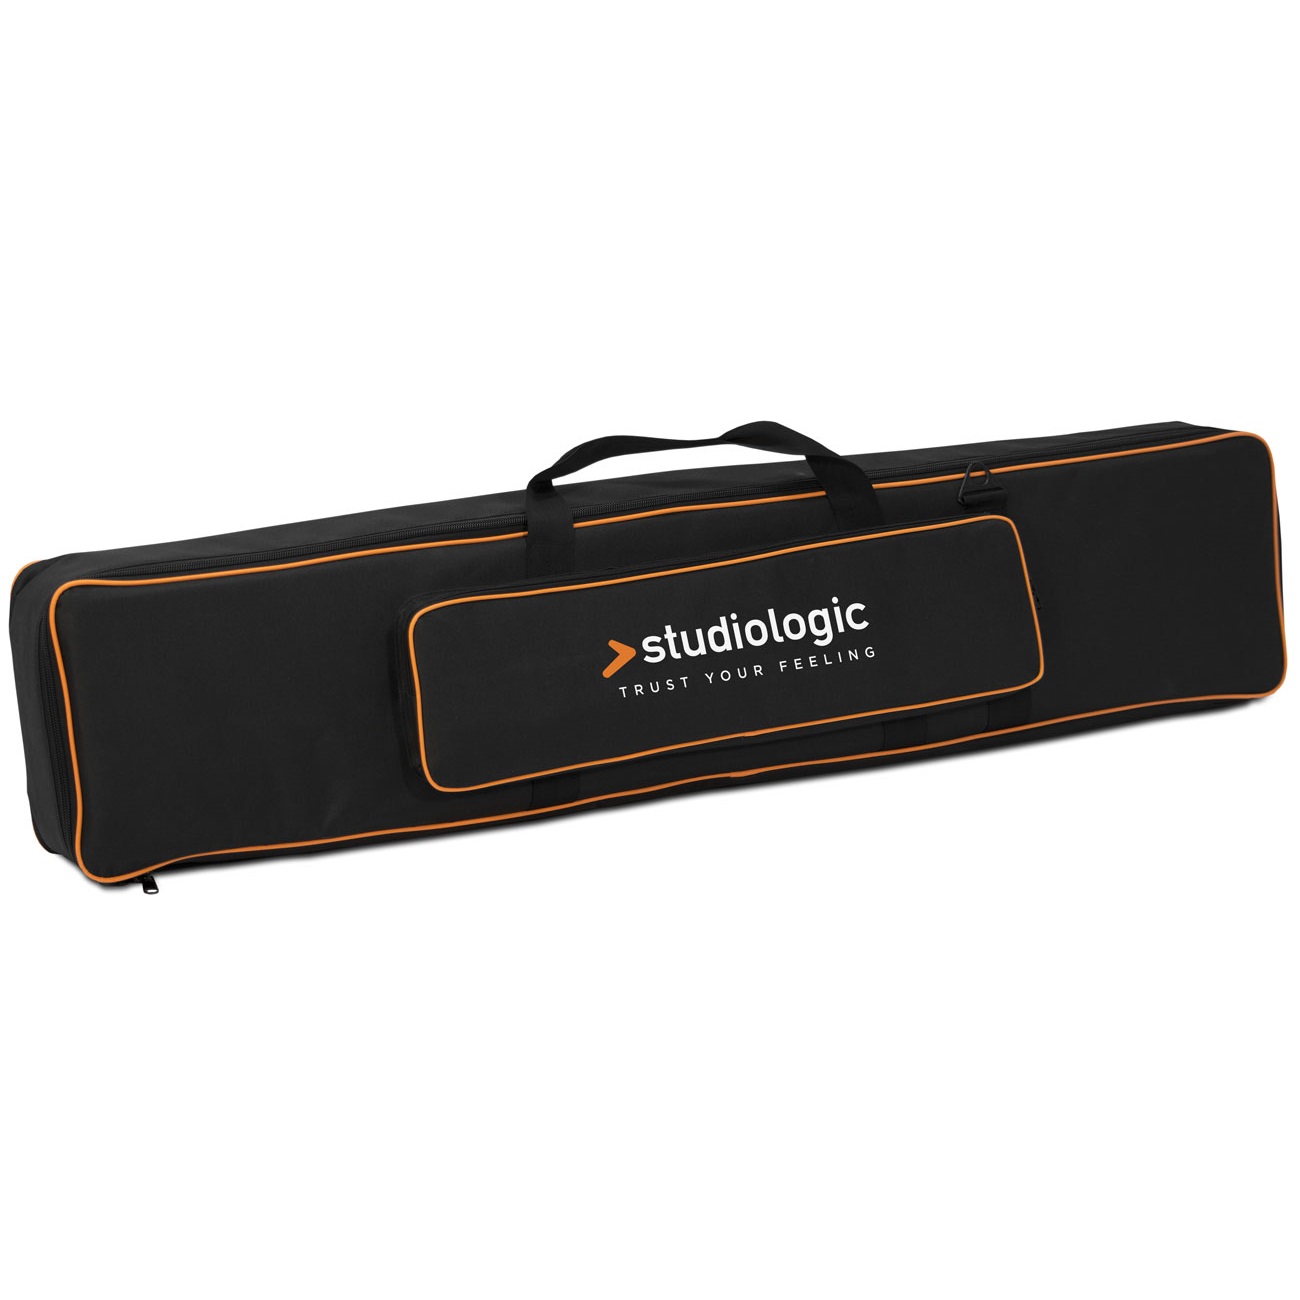 Чехлы и кейсы для клавишных Studiologic Soft Case Size B чехлы и кейсы для клавишных rockbag rb21624b